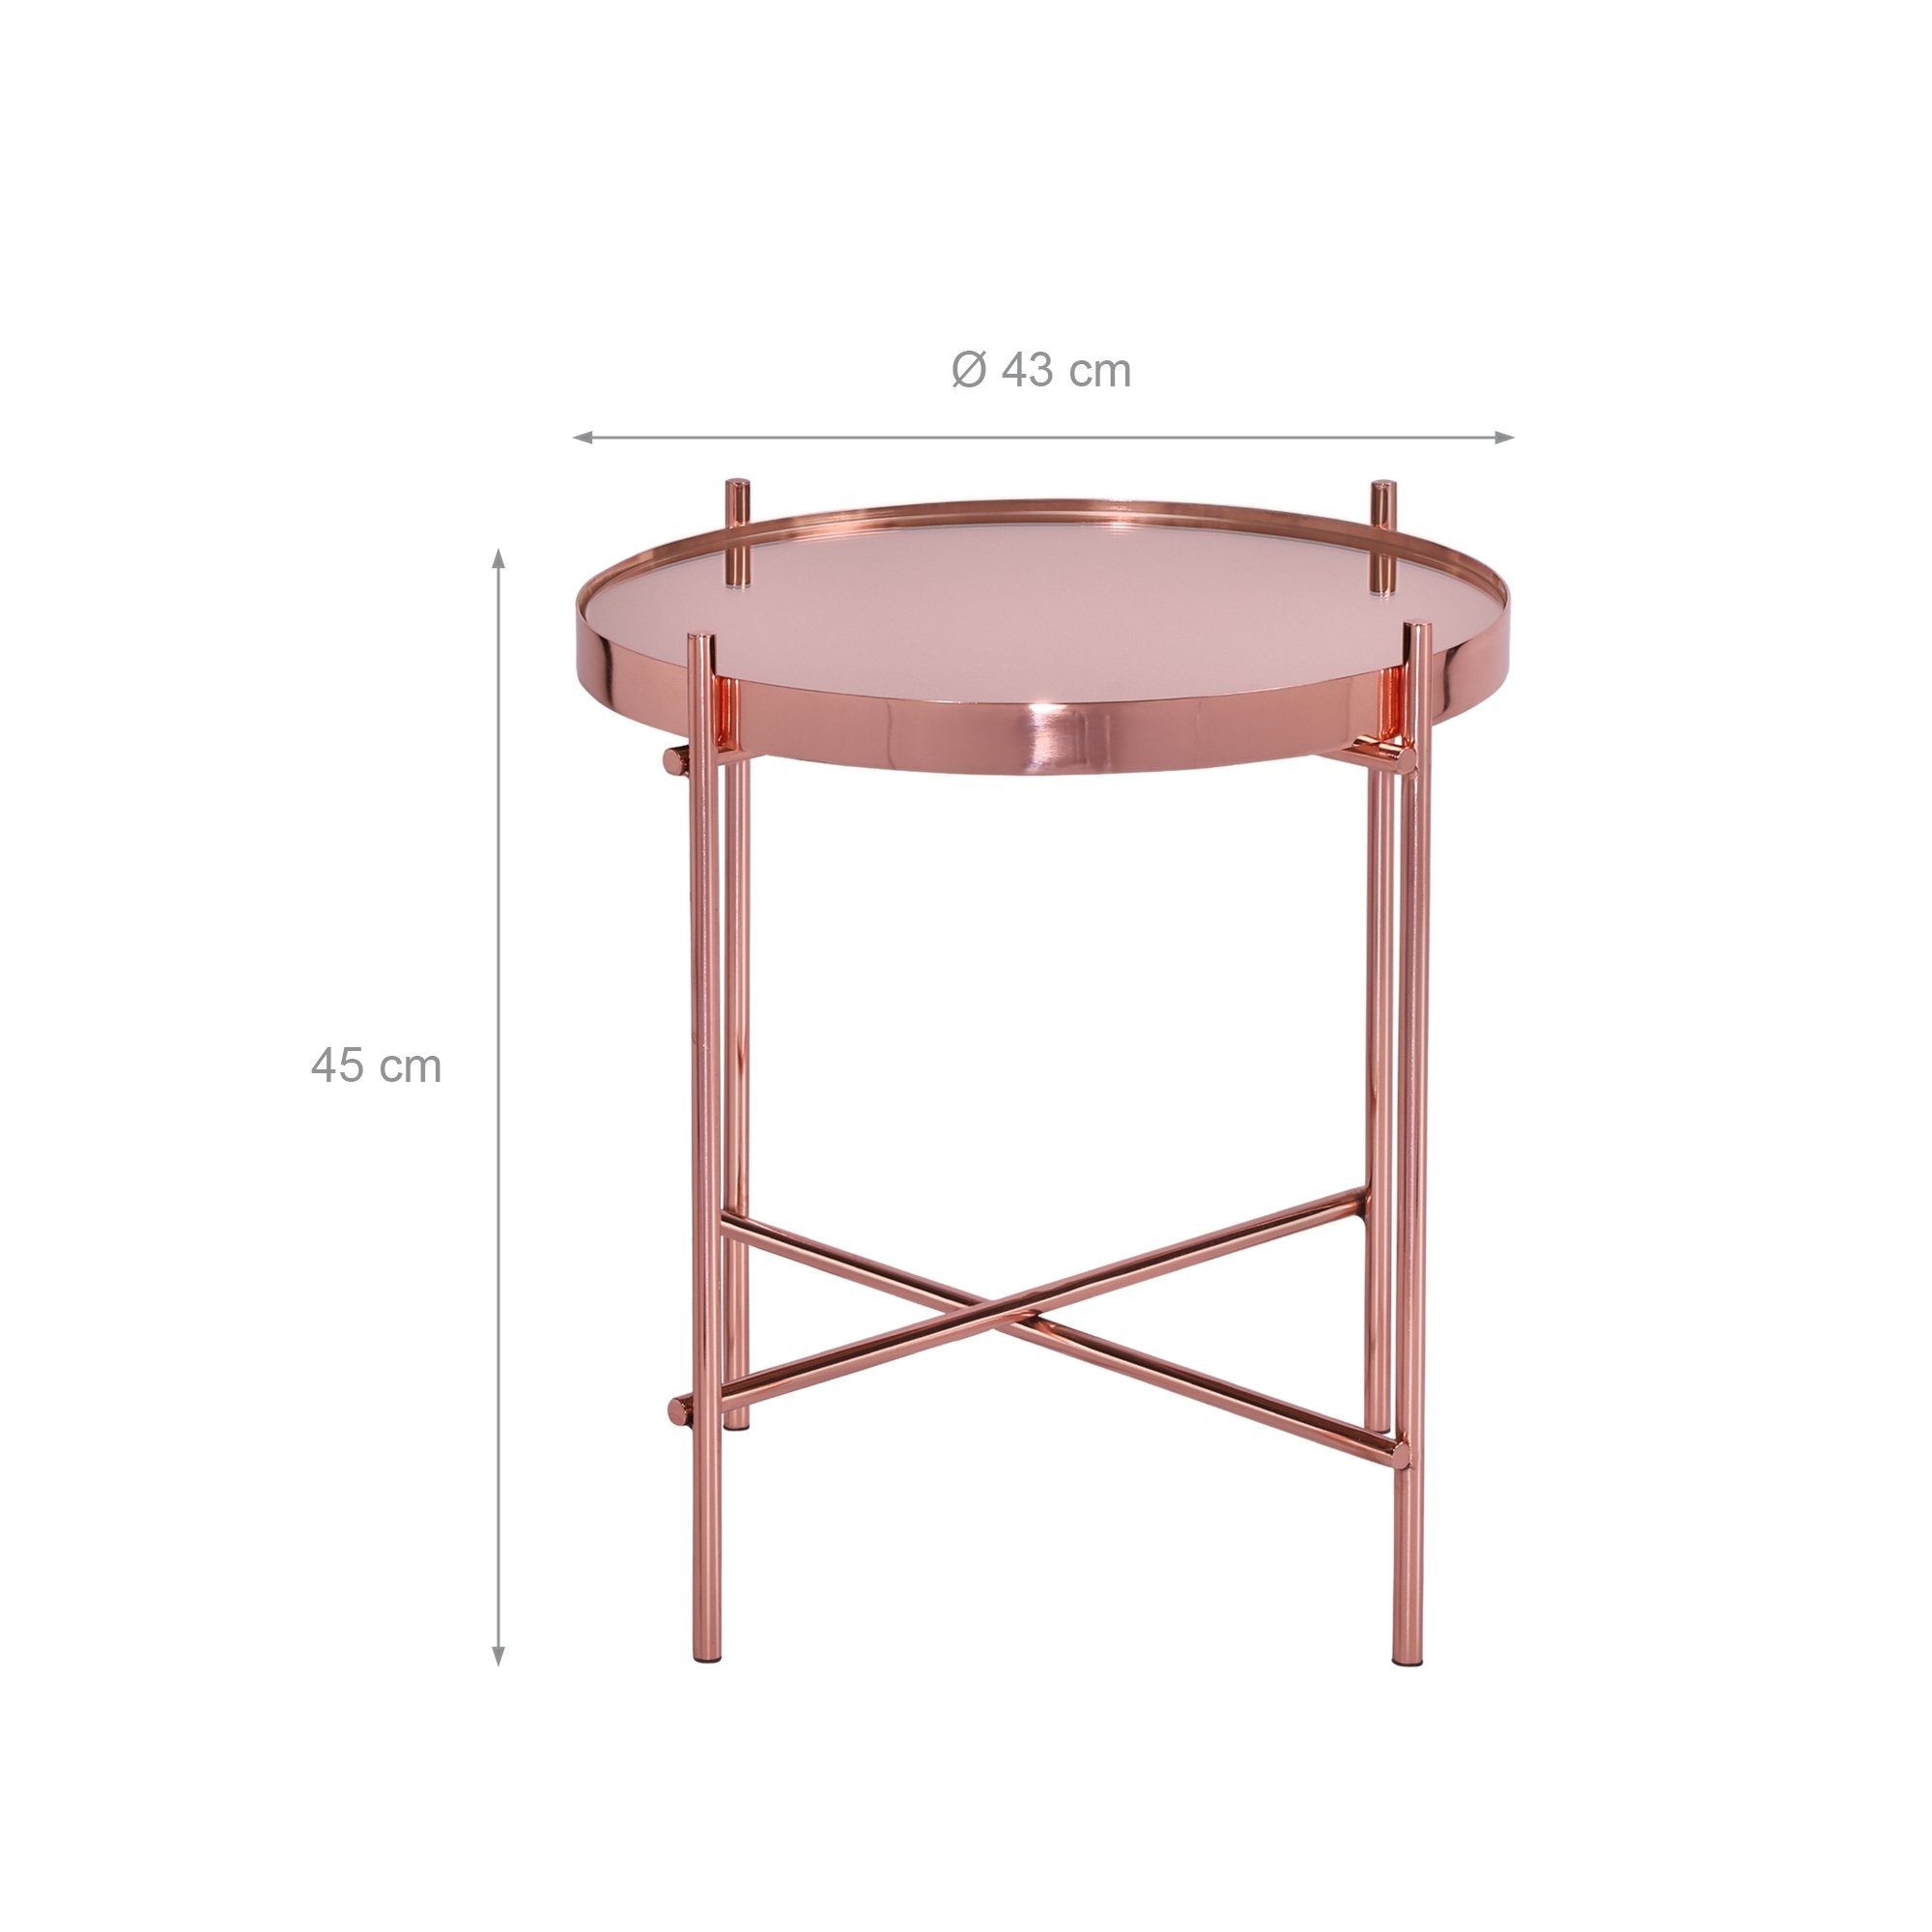 WOMO-DESIGN Beistelltisch Wohnzimmertisch Couchtisch Unikat Tisch, Sofatisch Metall Rund Edler Ø43x45cm Lounge Glas Kupfer Glastisch